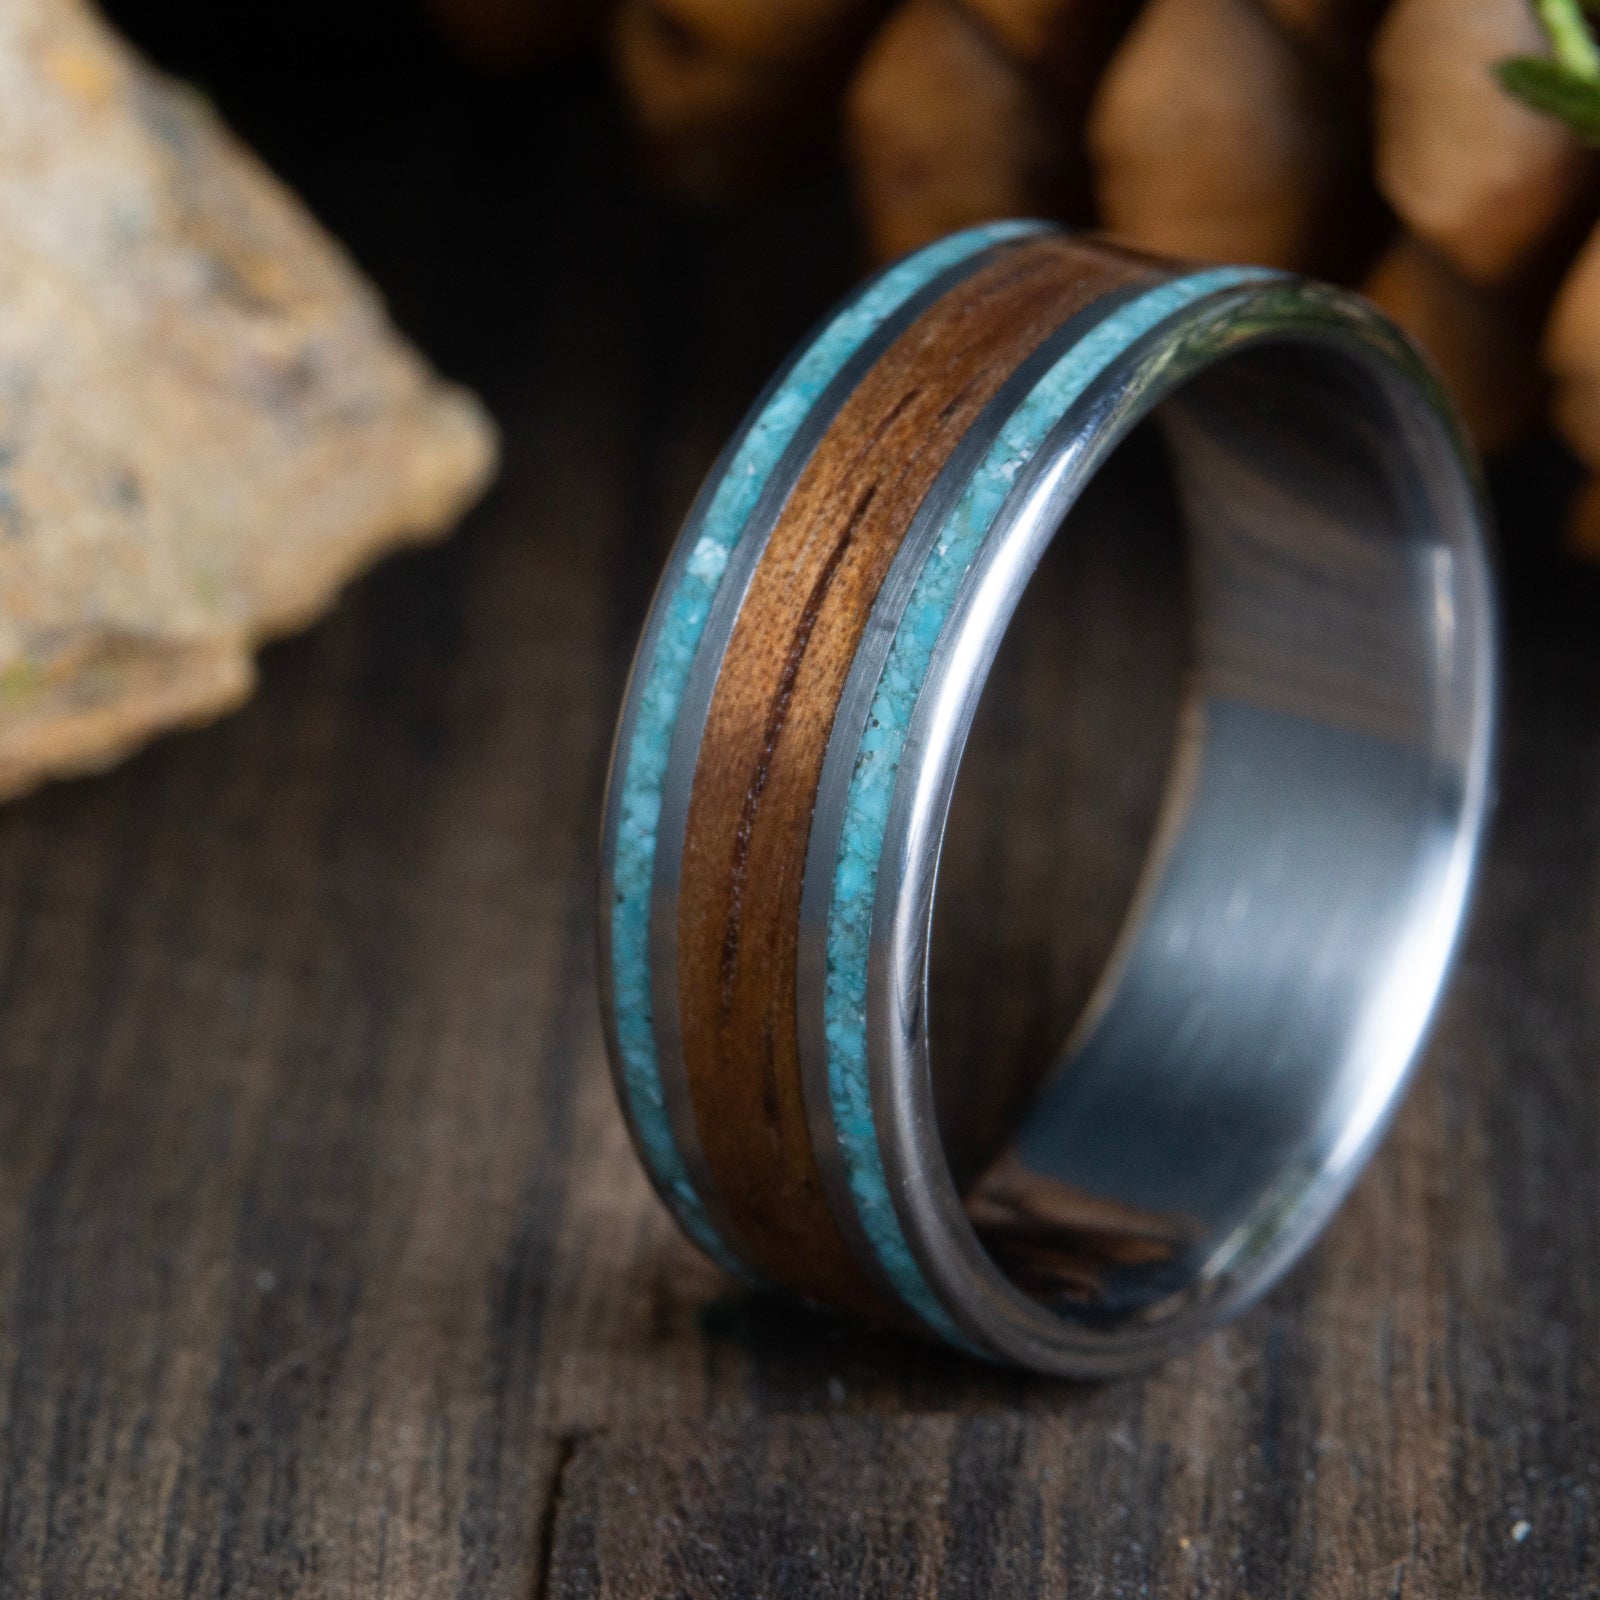 Koa wood wedding ring with titanium and turquoise inlay